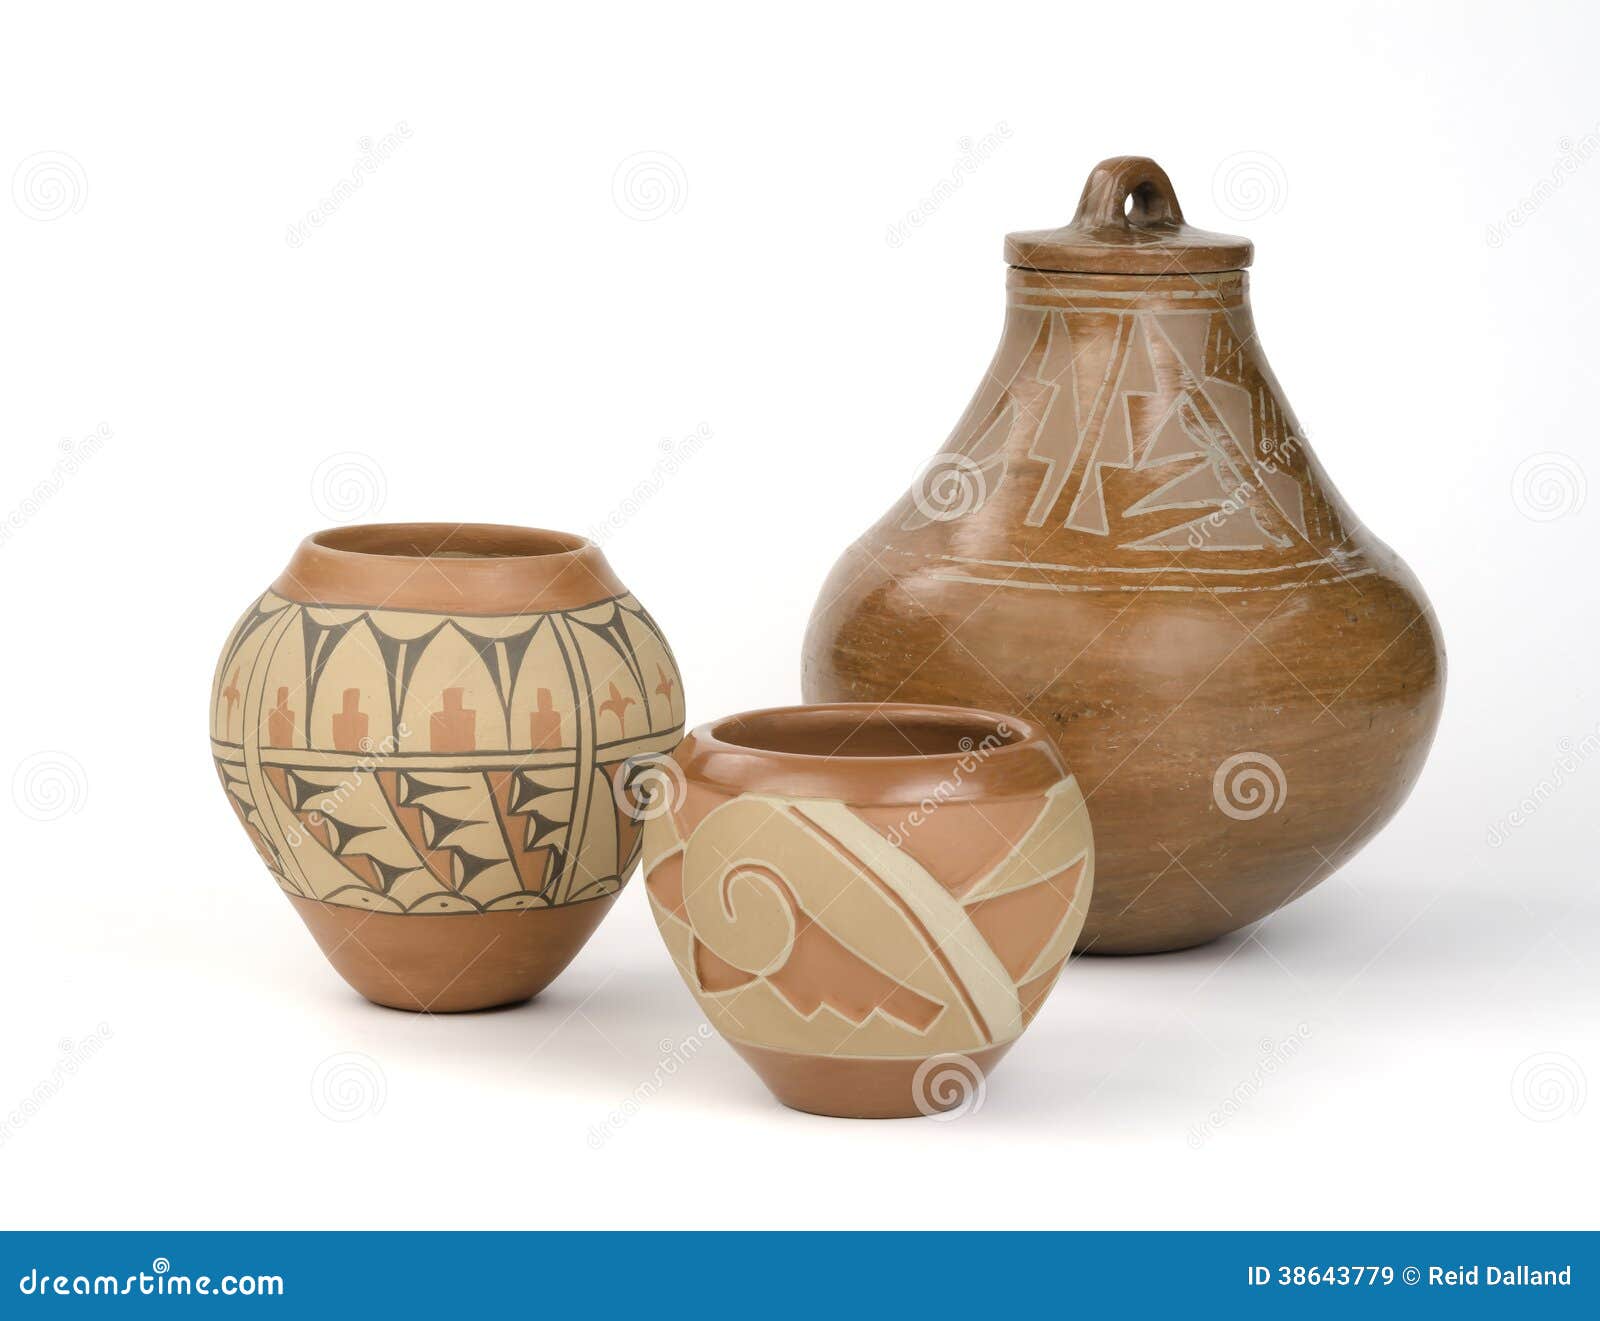 native american pueblo pottery.